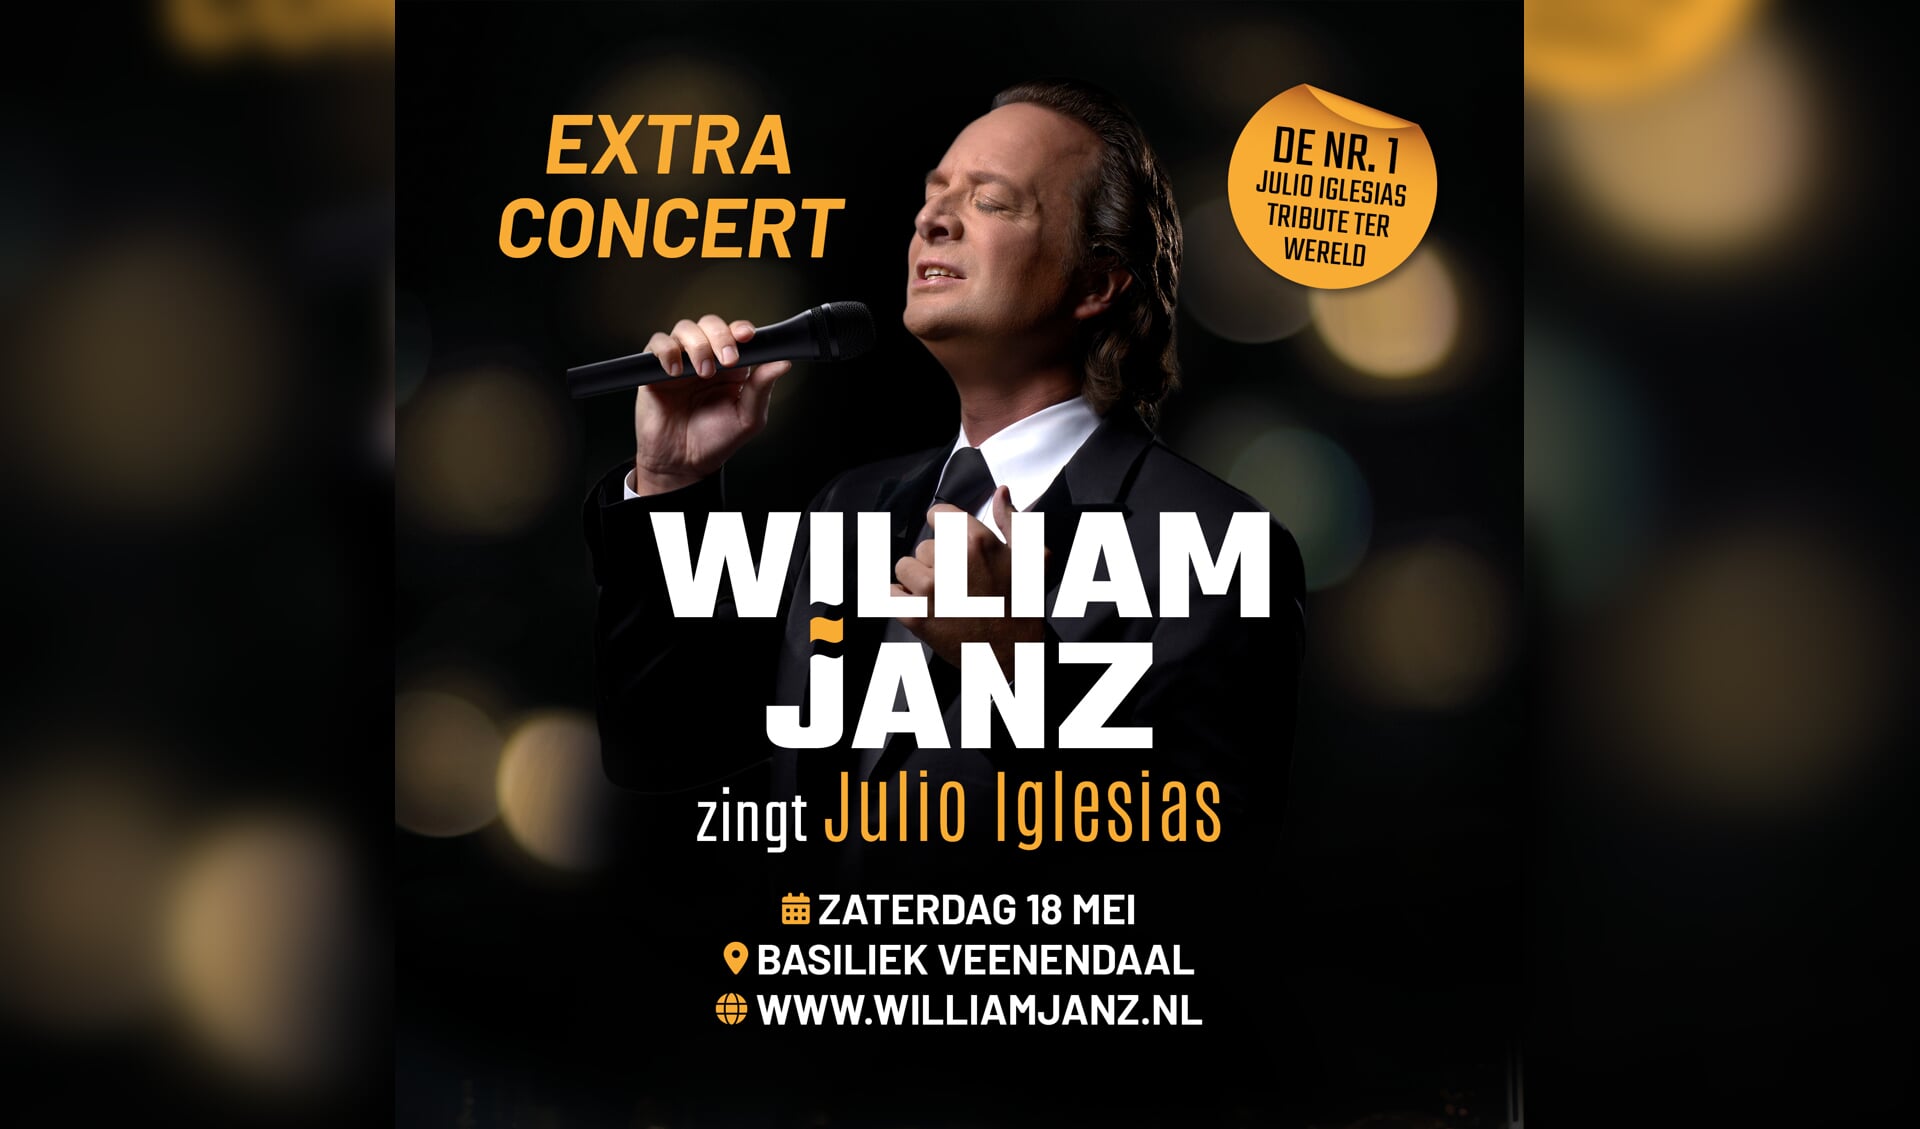 William Janz zingt Julio Iglesias